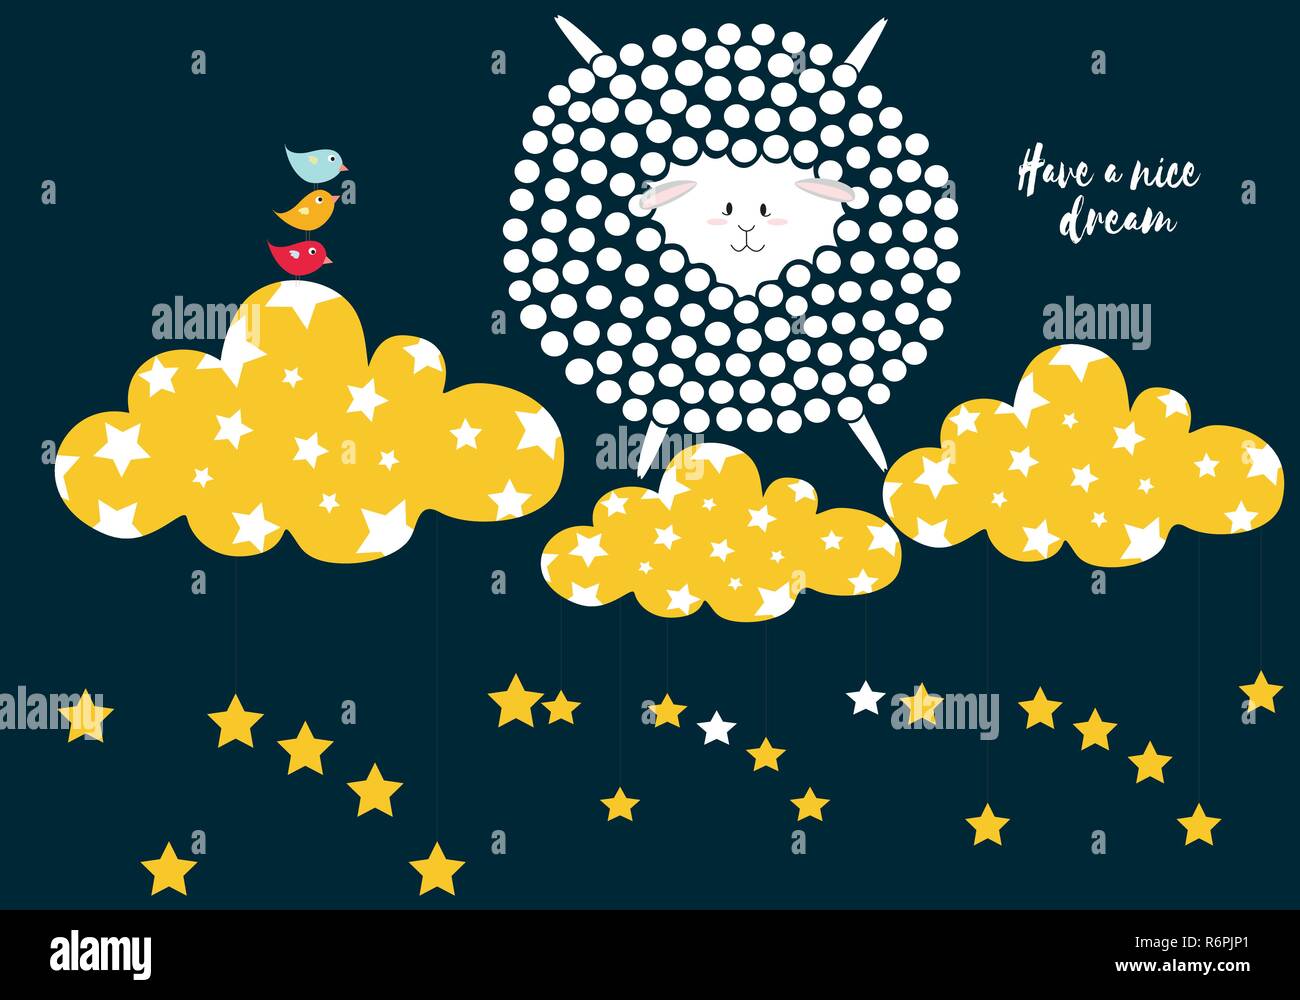 Pecore in punti, hanno un bel sogno scheda in bianco, rosa, oro e nero tavolozza colori illustrazione vettoriale con uccelli e nuvole con stelle, modello, su Illustrazione Vettoriale